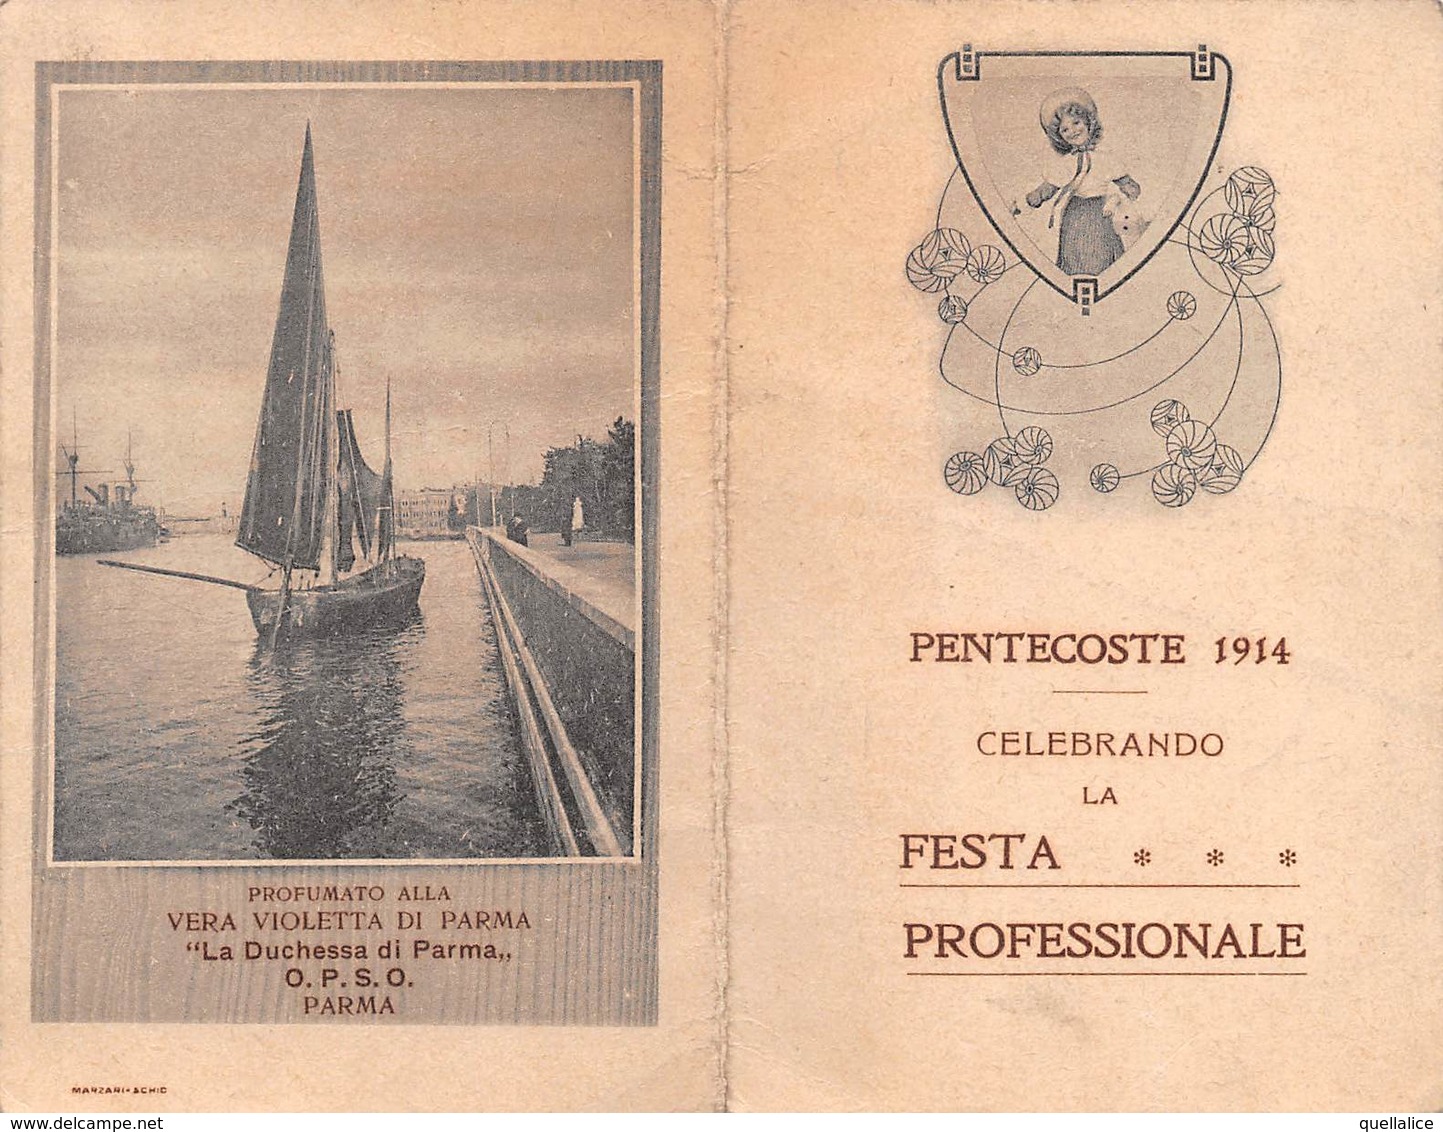 0608 "CALENDARIO - PENTECOSTE 1914 CELEBRANDO LA FESTA PROFESSIONALE - PROFUMATO ALLA VIOLETTA DI PARMA" ORIG - Small : 1901-20